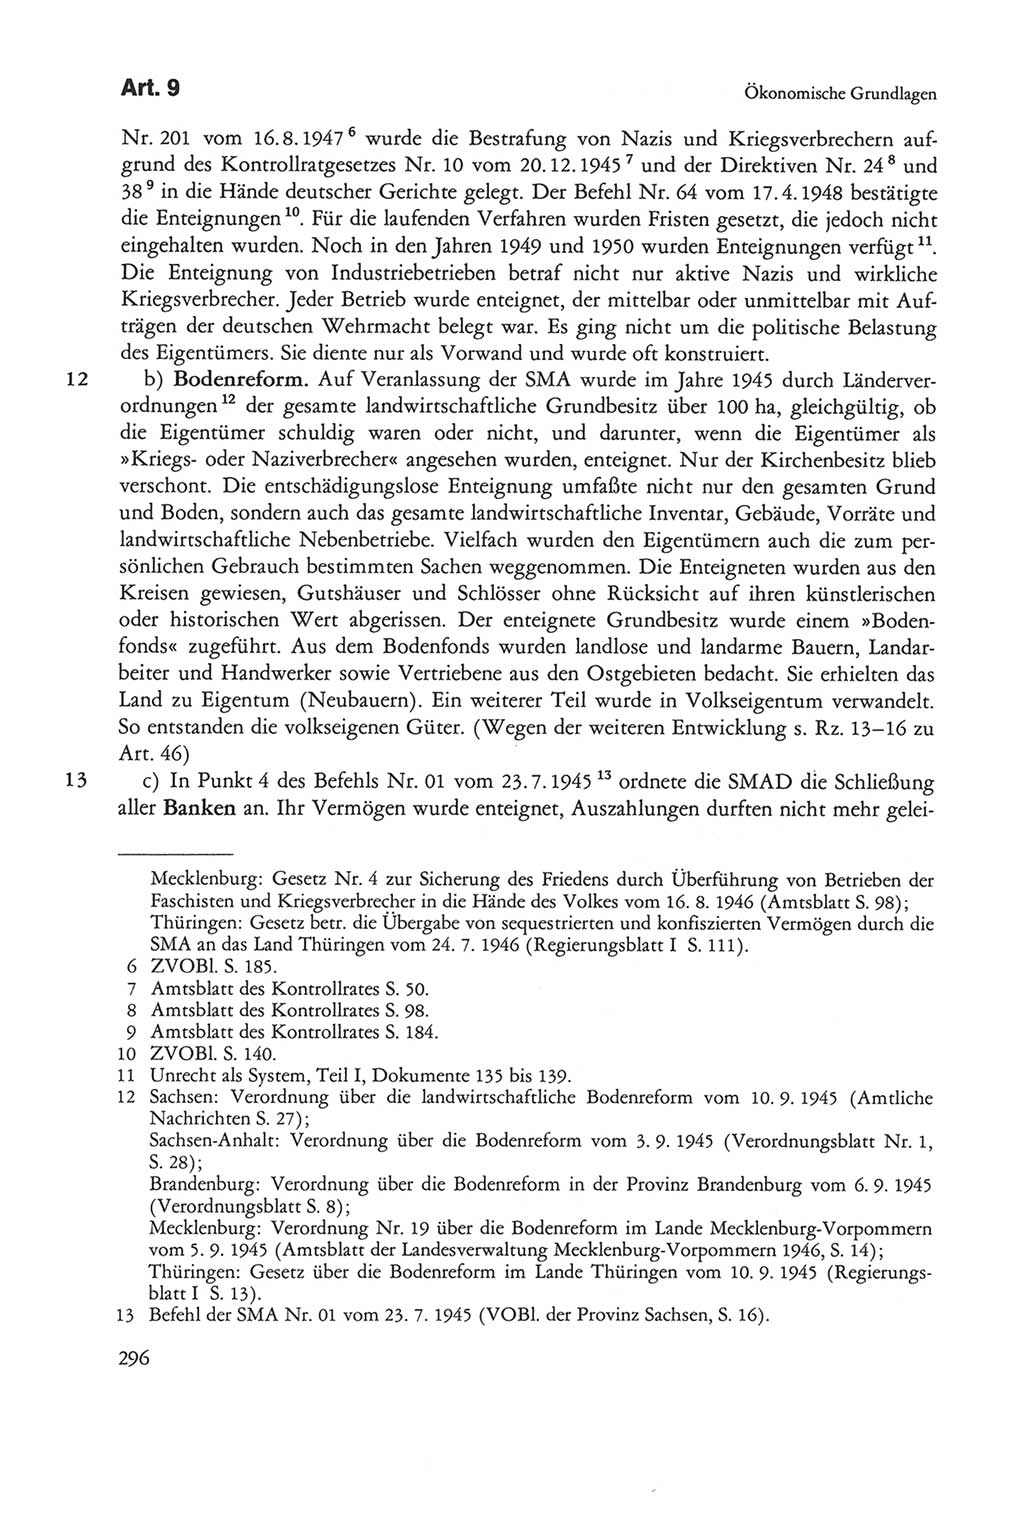 Die sozialistische Verfassung der Deutschen Demokratischen Republik (DDR), Kommentar mit einem Nachtrag 1997, Seite 296 (Soz. Verf. DDR Komm. Nachtr. 1997, S. 296)